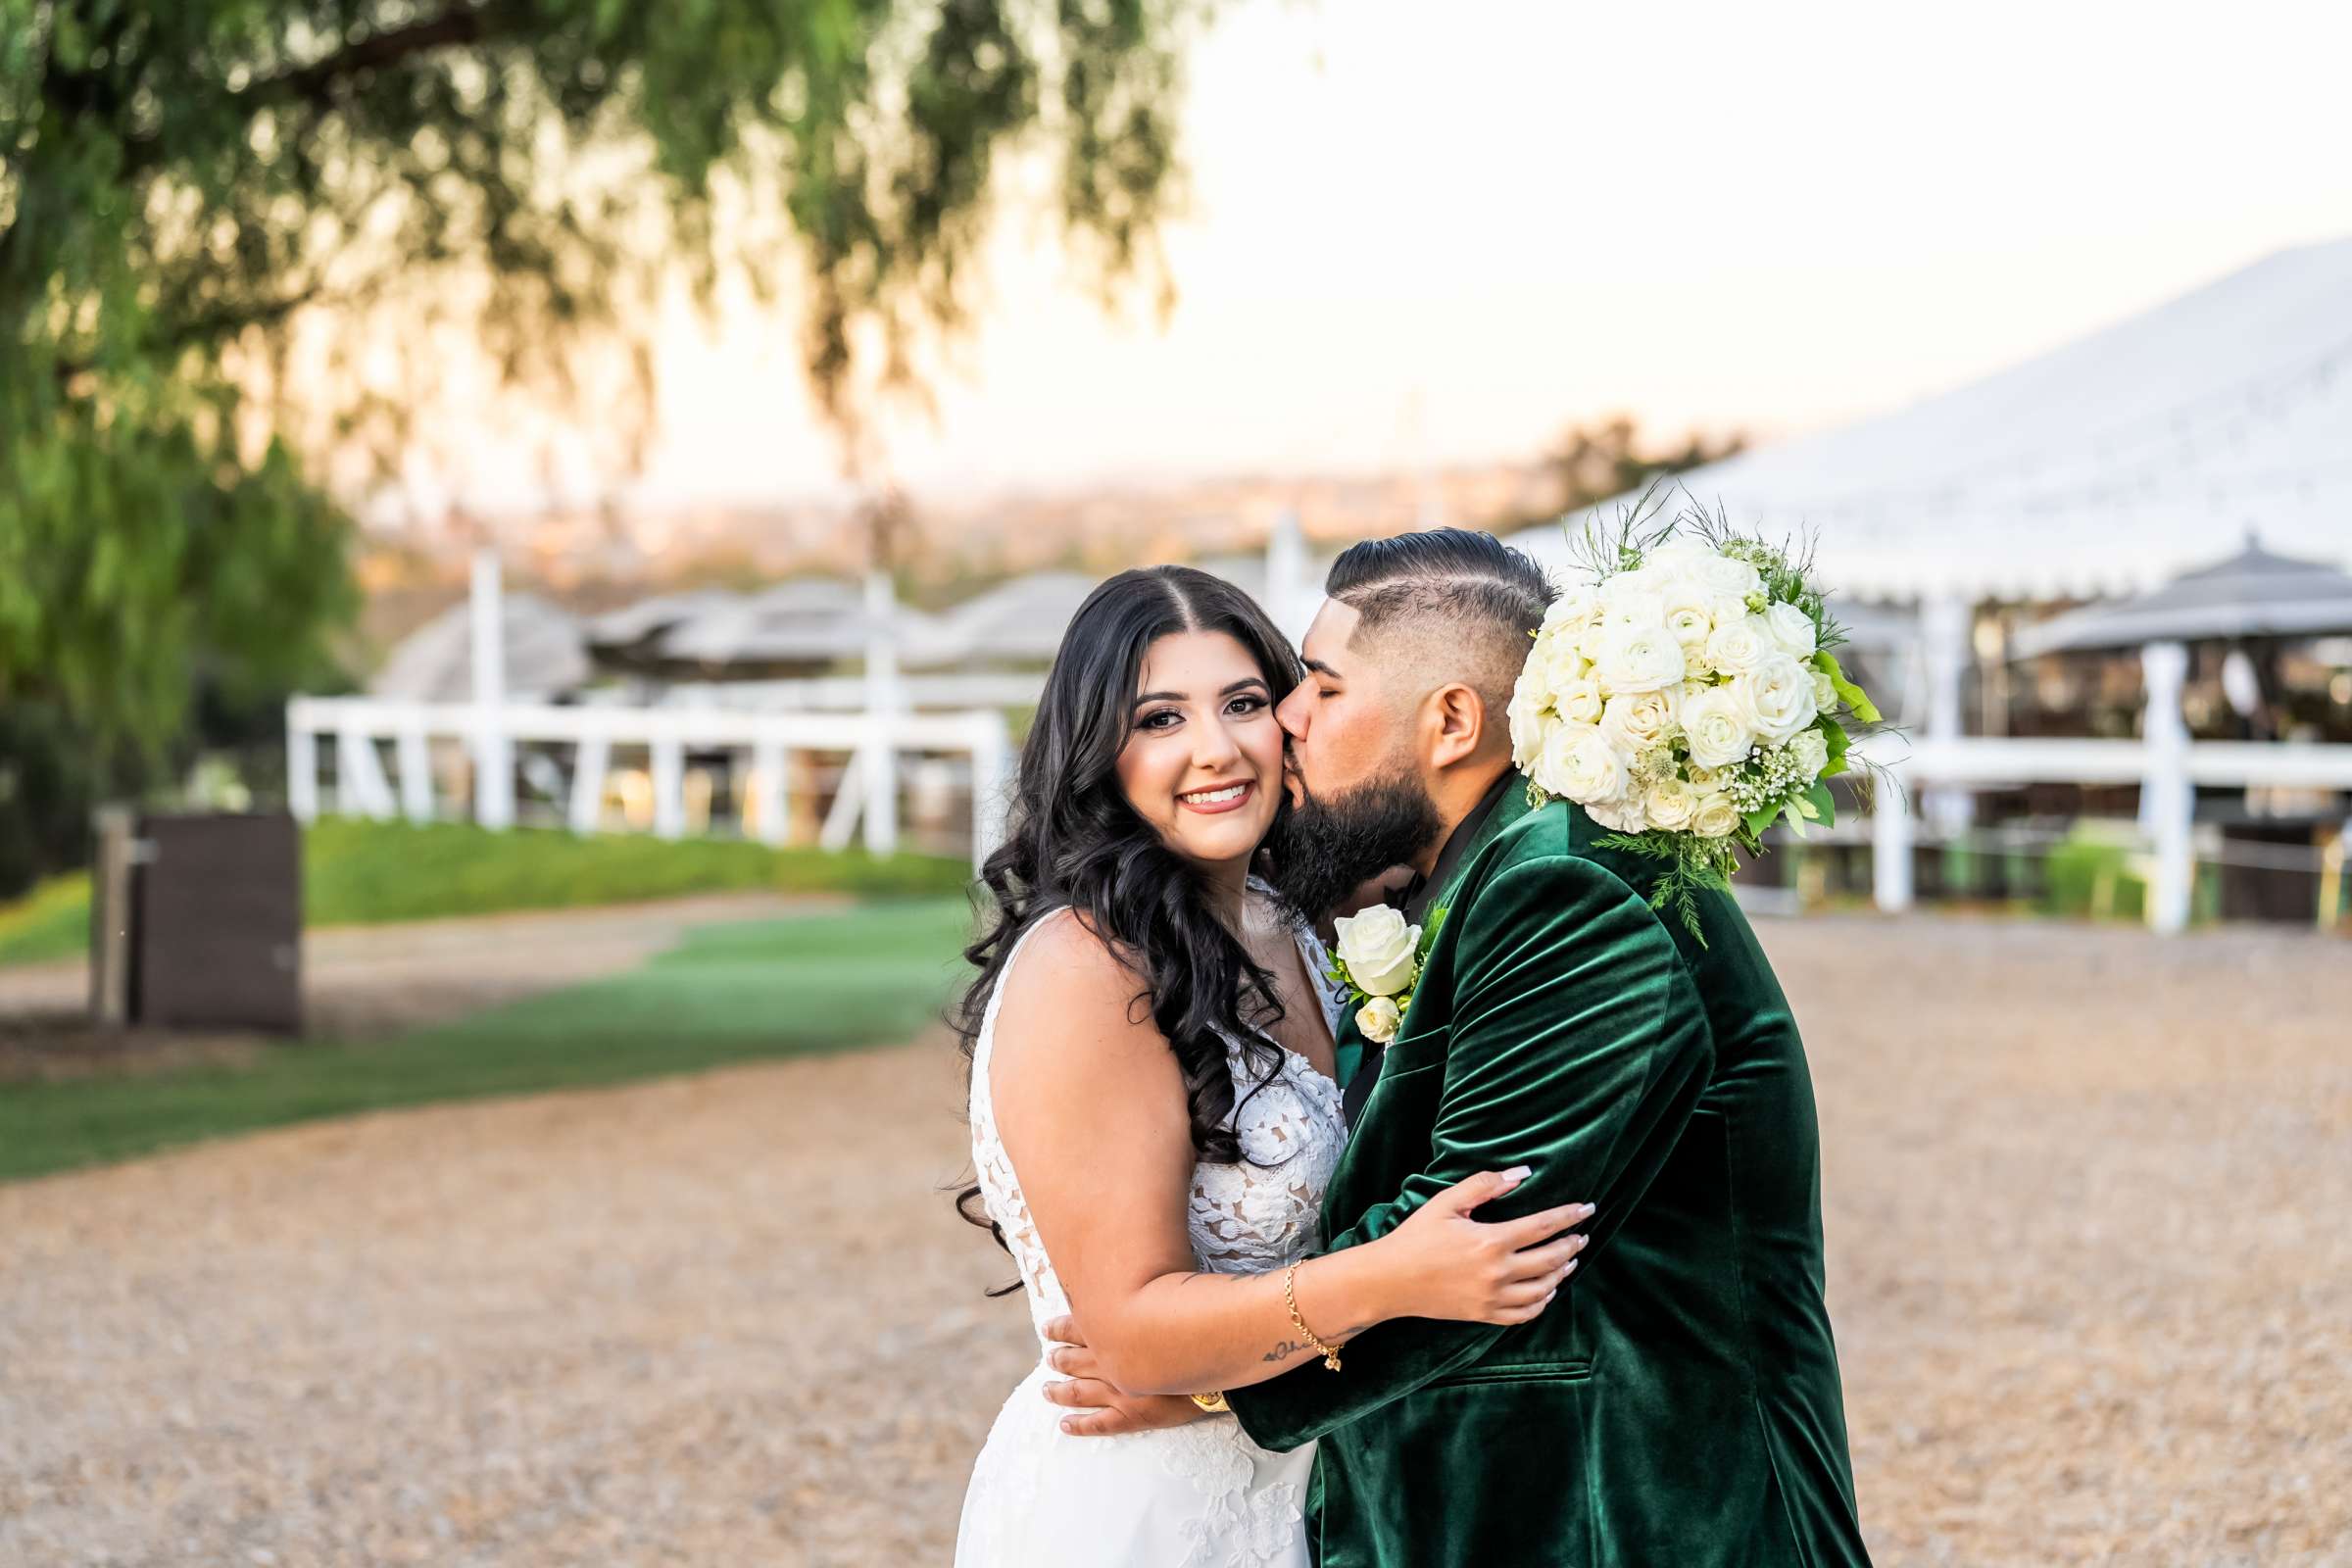 La Hacienda Wedding, Ashley and Alvaro Wedding Photo #5 by True Photography